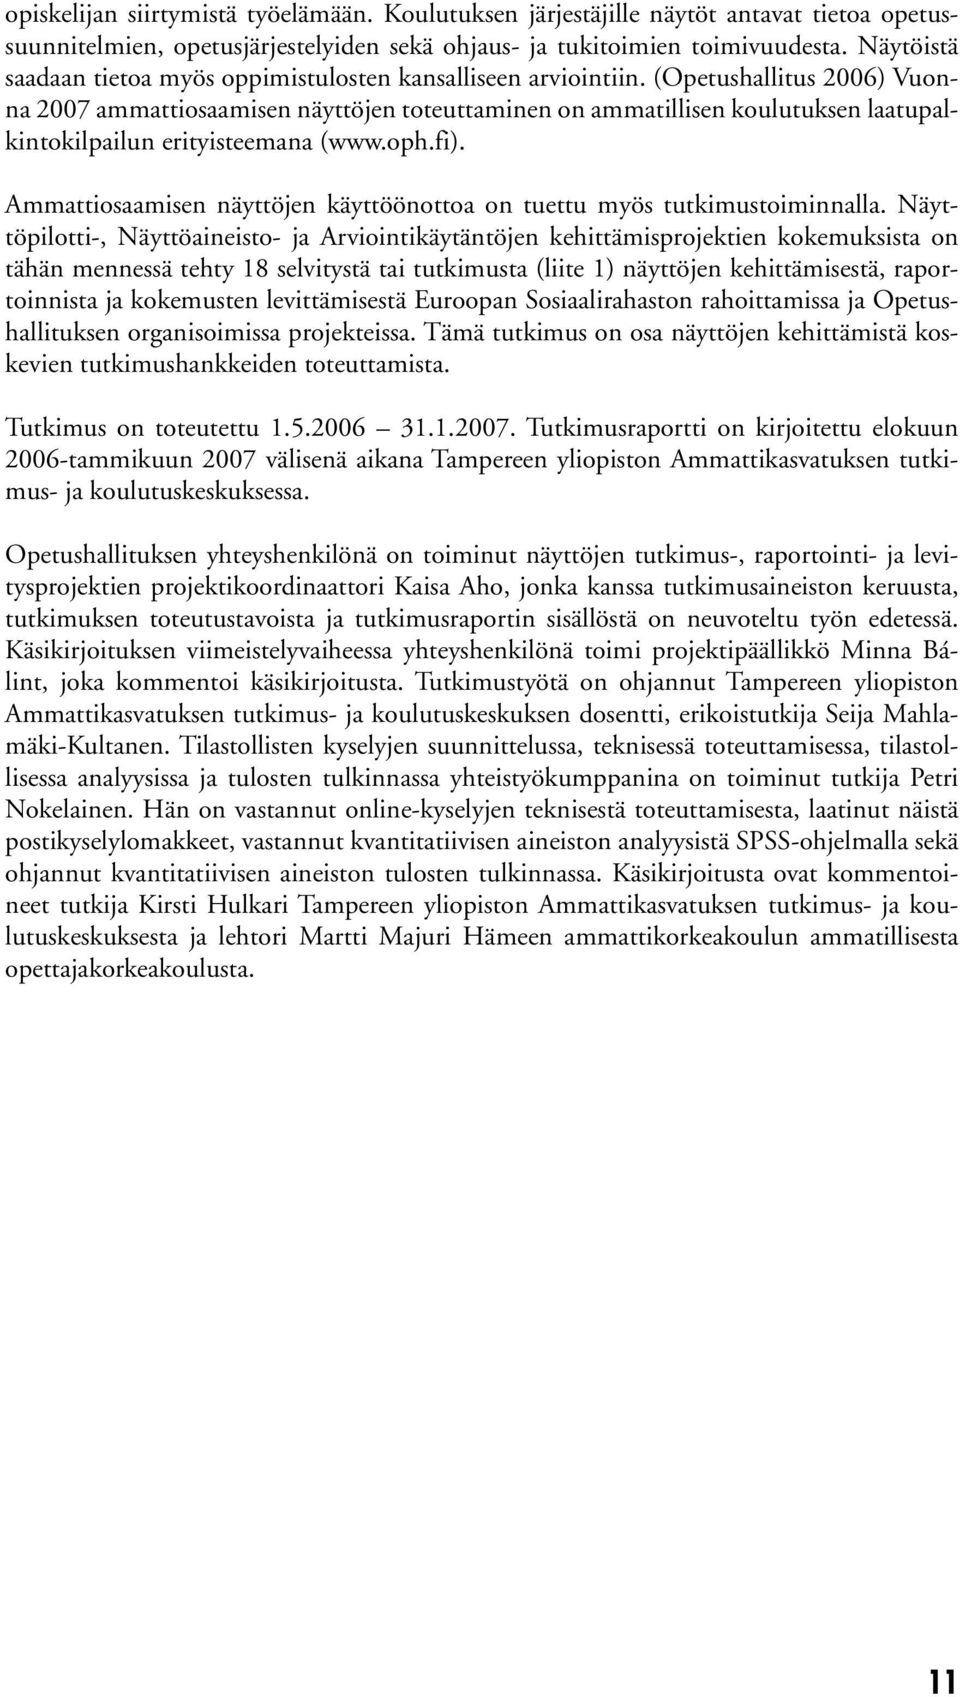 (Opetushallitus 2006) Vuonna 2007 ammattiosaamisen näyttöjen toteuttaminen on ammatillisen koulutuksen laatupalkintokilpailun erityisteemana (www.oph.fi).